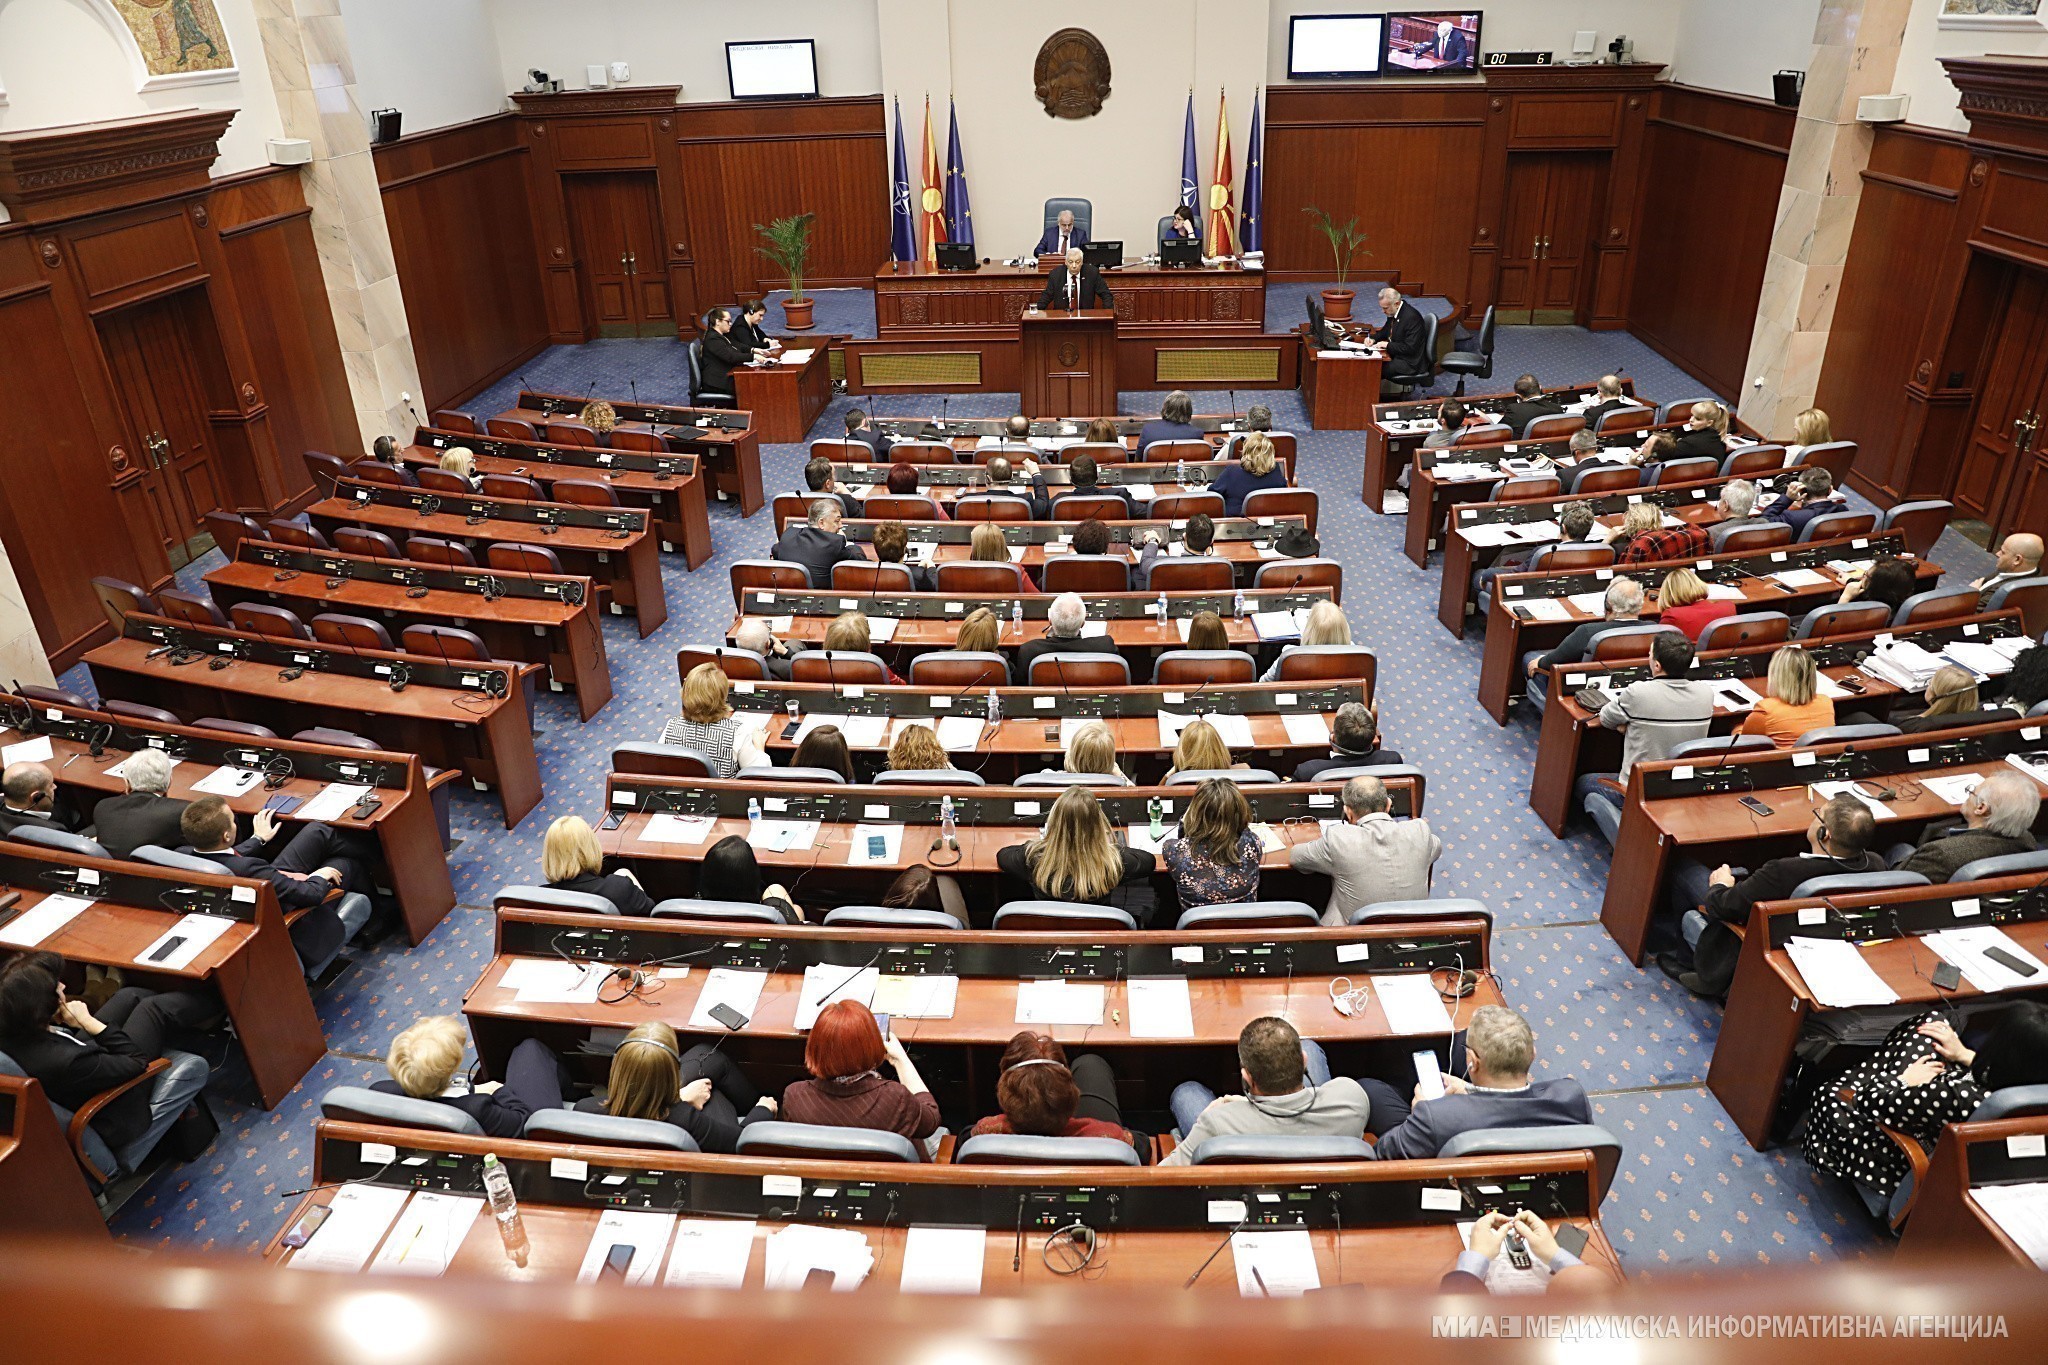 Βόρεια Μακεδονία: Κατατέθηκε στη Βουλή η πρόταση για τροποποίηση του Συντάγματος